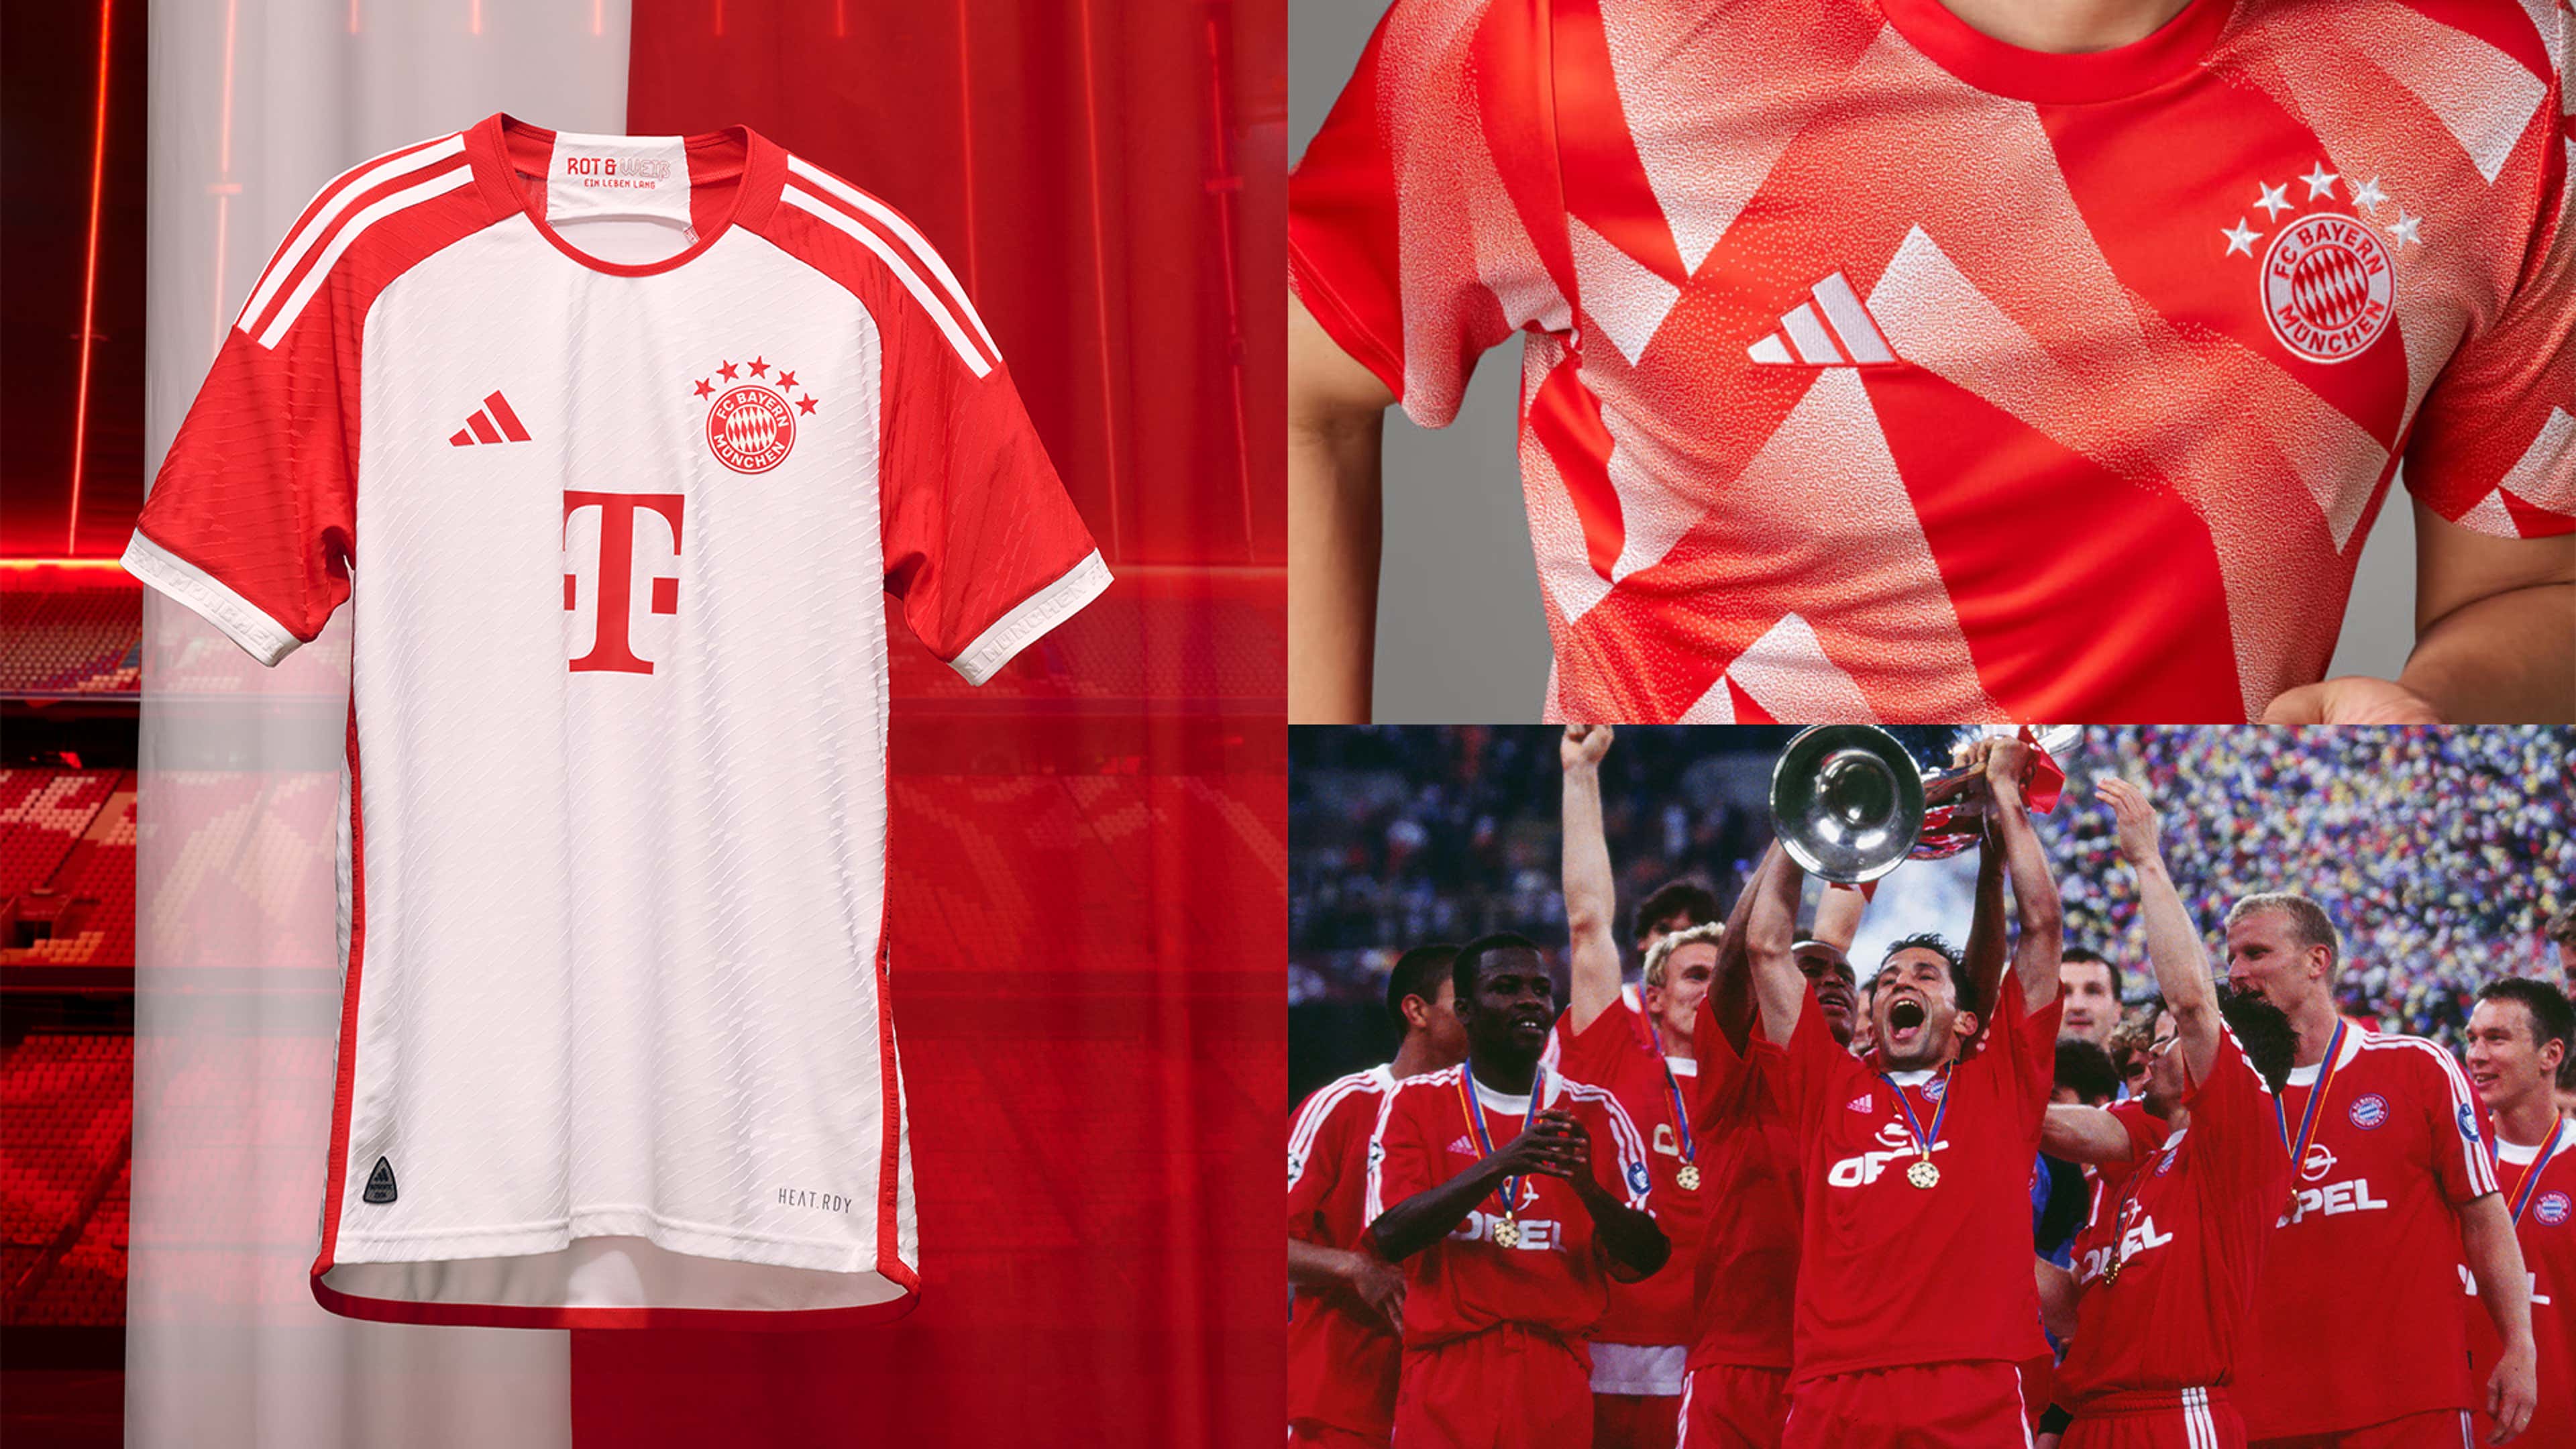 RB Leipzig 23-24 Away Kit Released - Debut vs Bayern - Footy Headlines